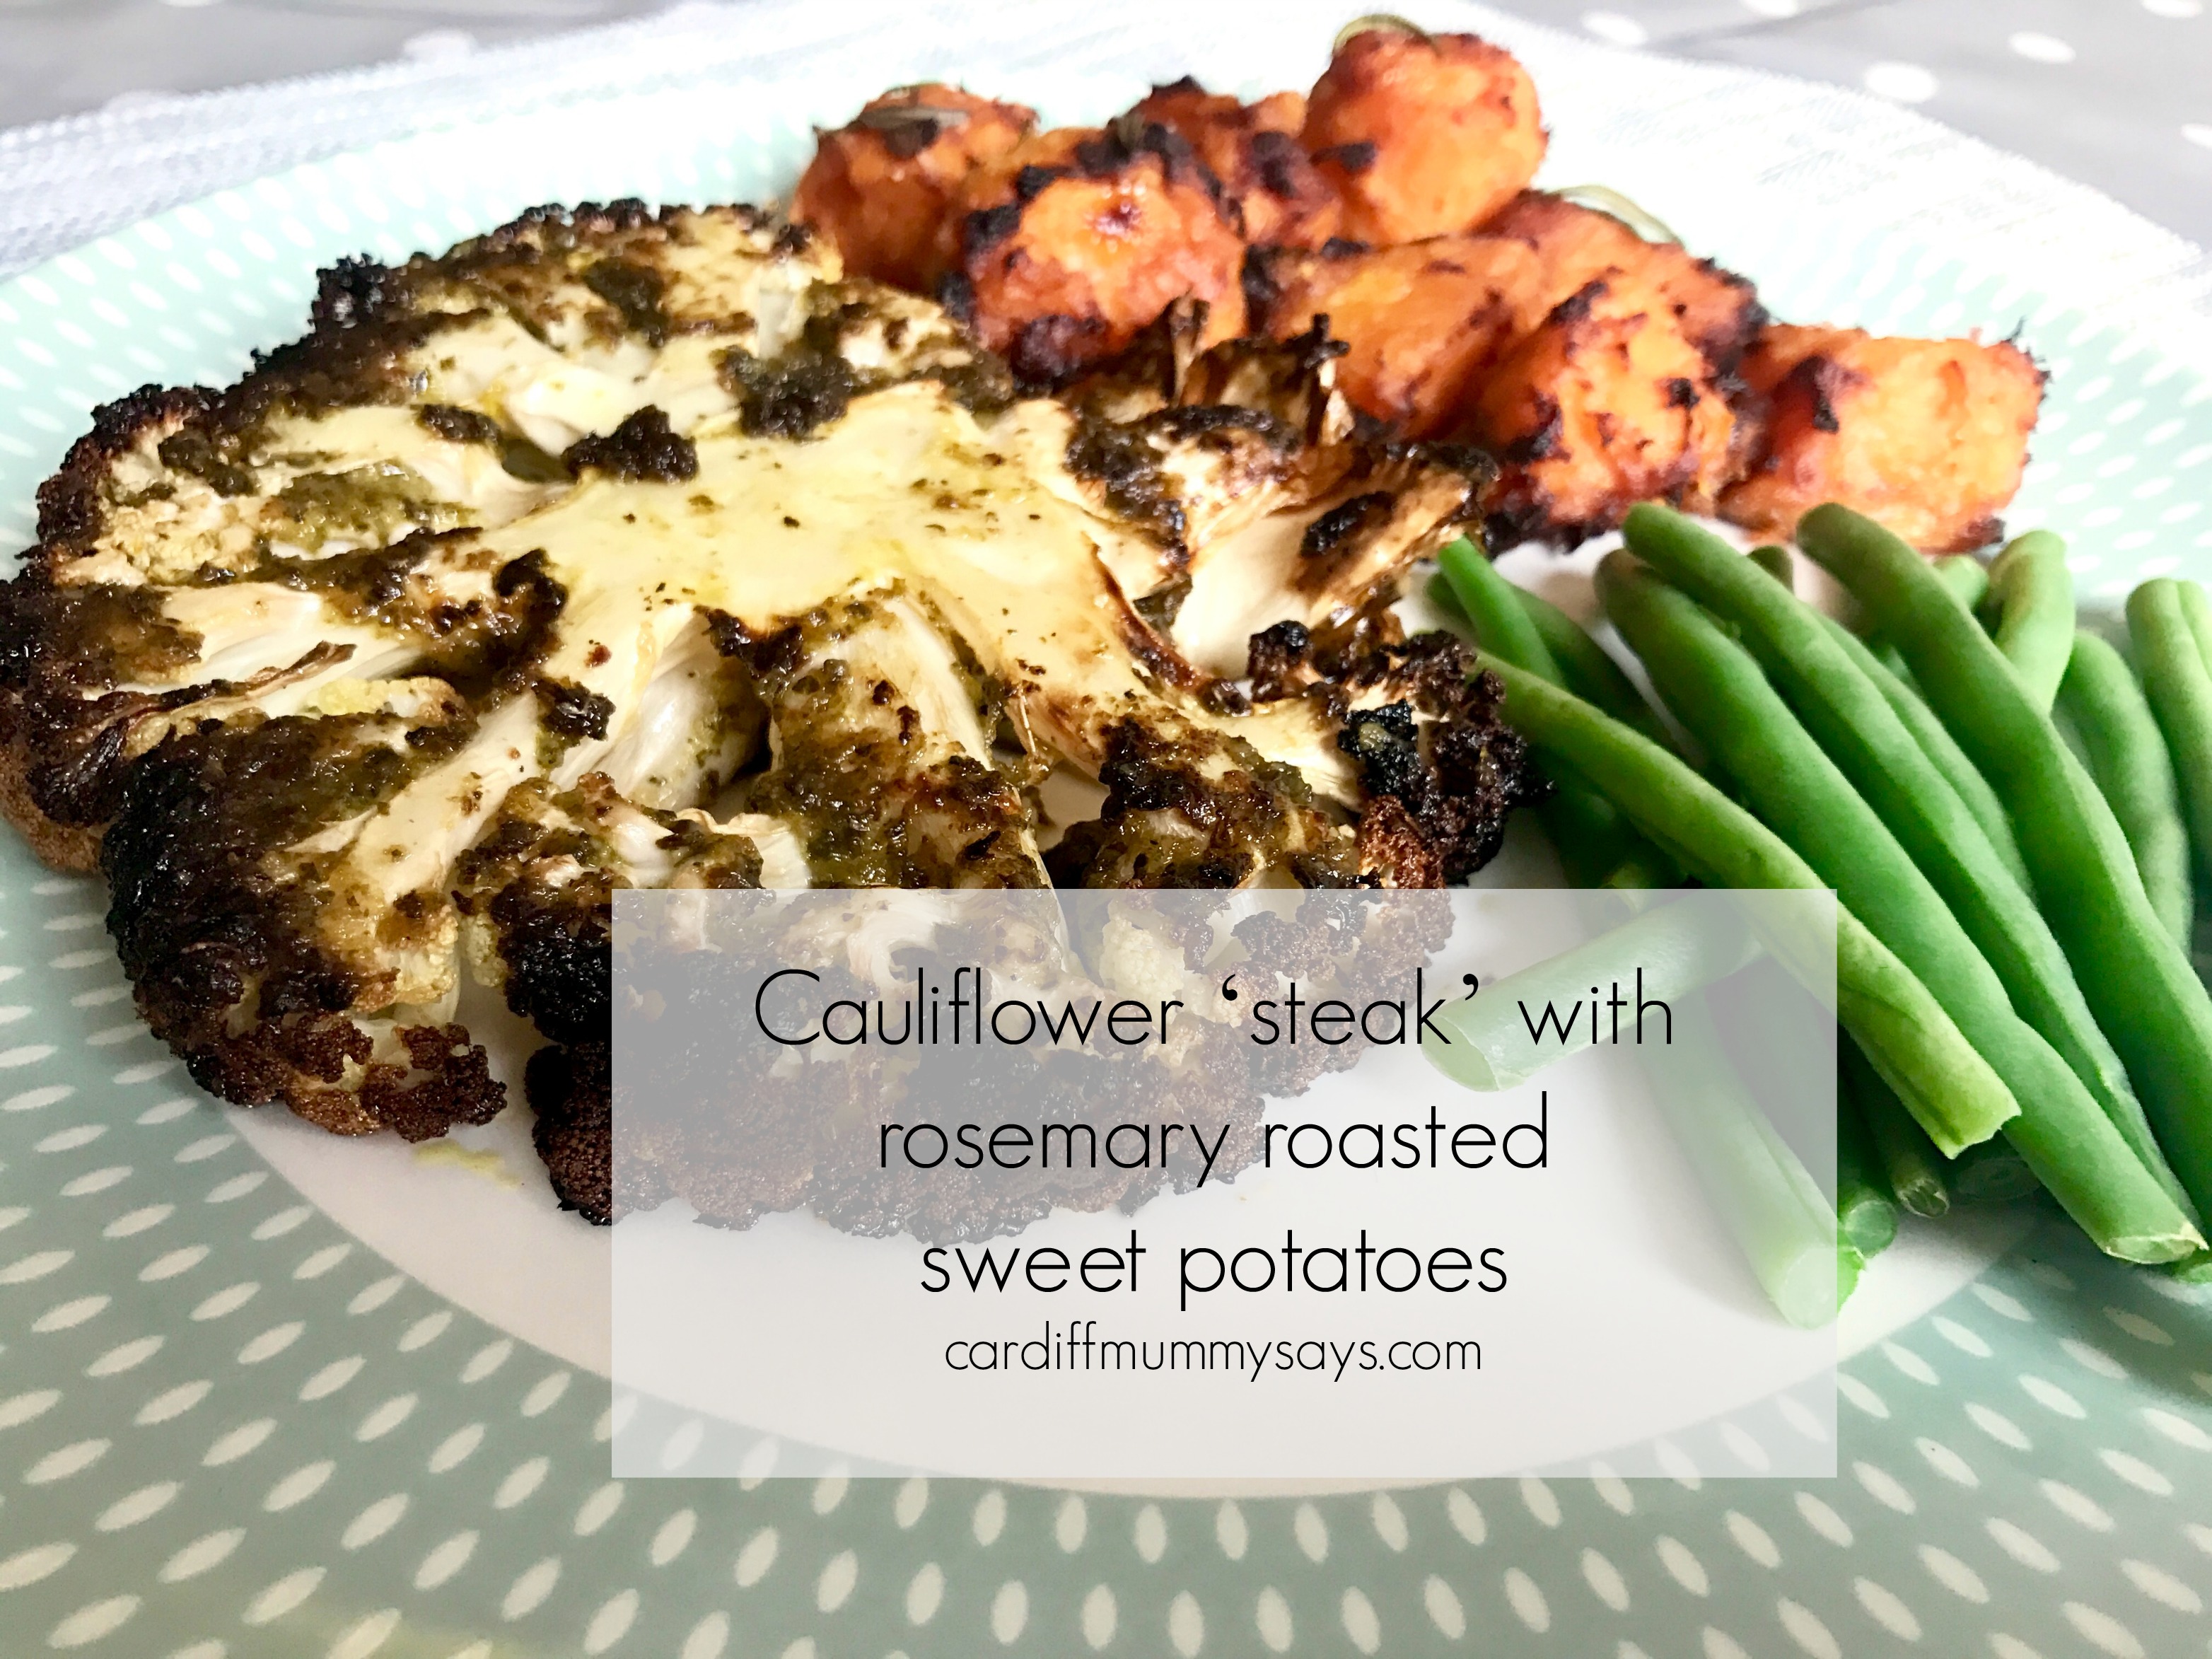 Cauliflower steak